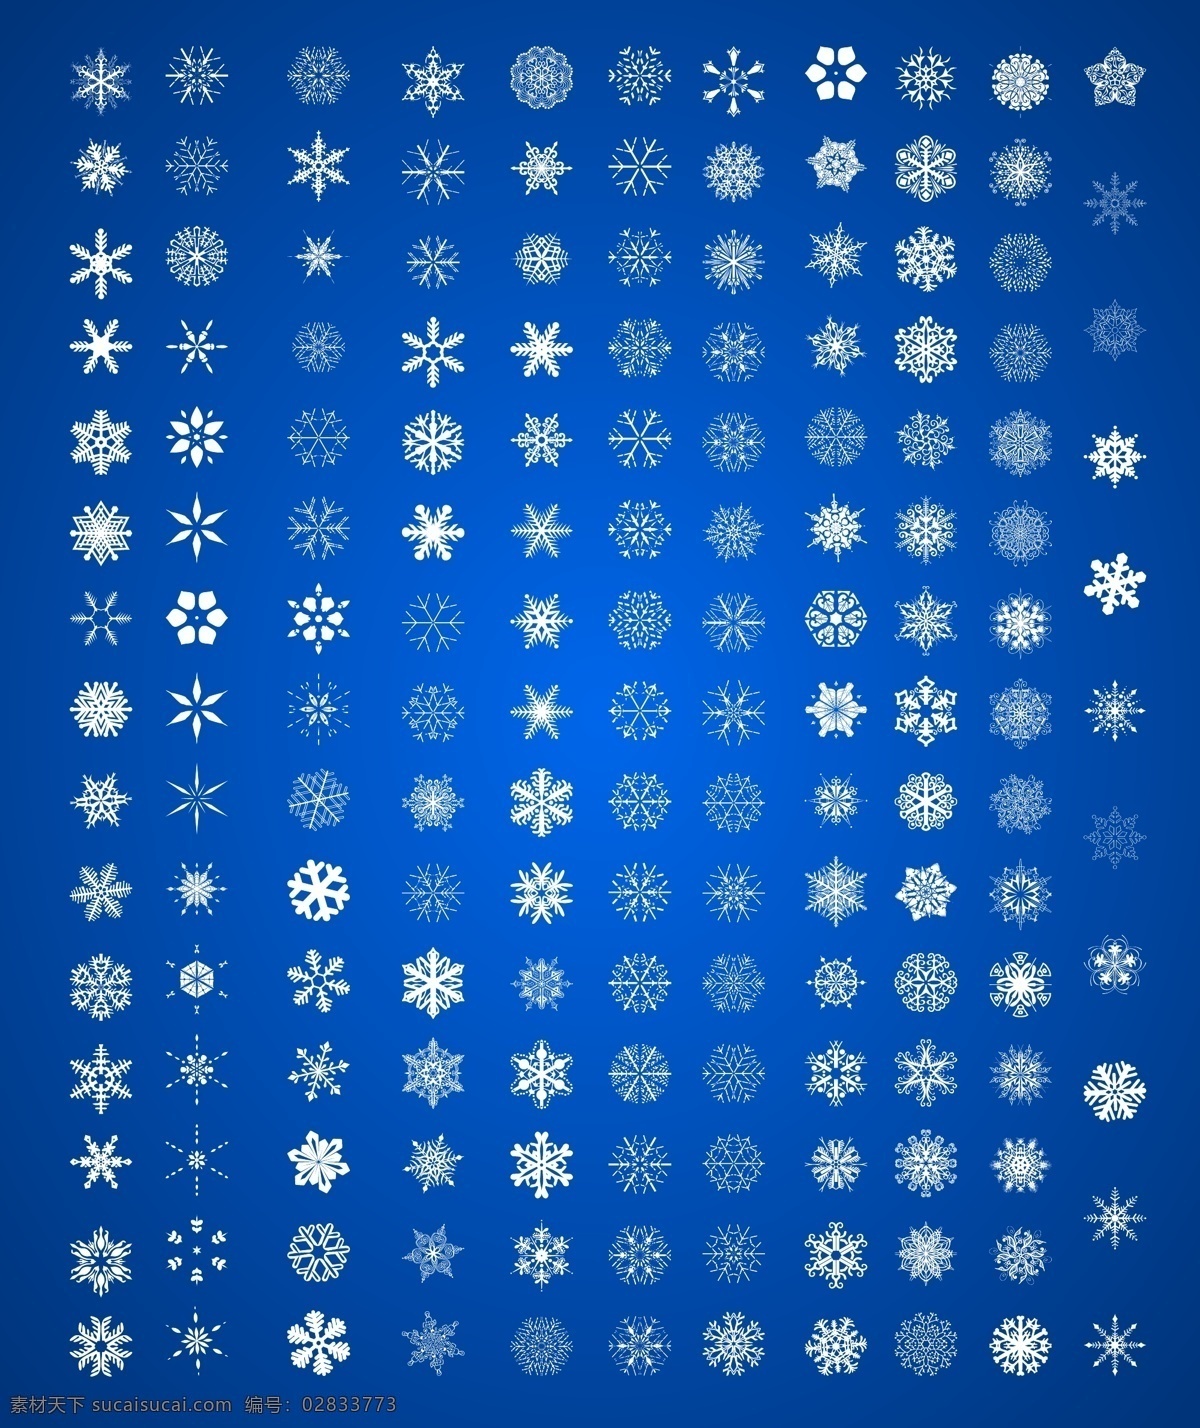 雪花图案 雪花素材 矢量雪花 雪花形状 圣诞元素 星形雪花 圆形雪花 立体雪花 晶体雪花